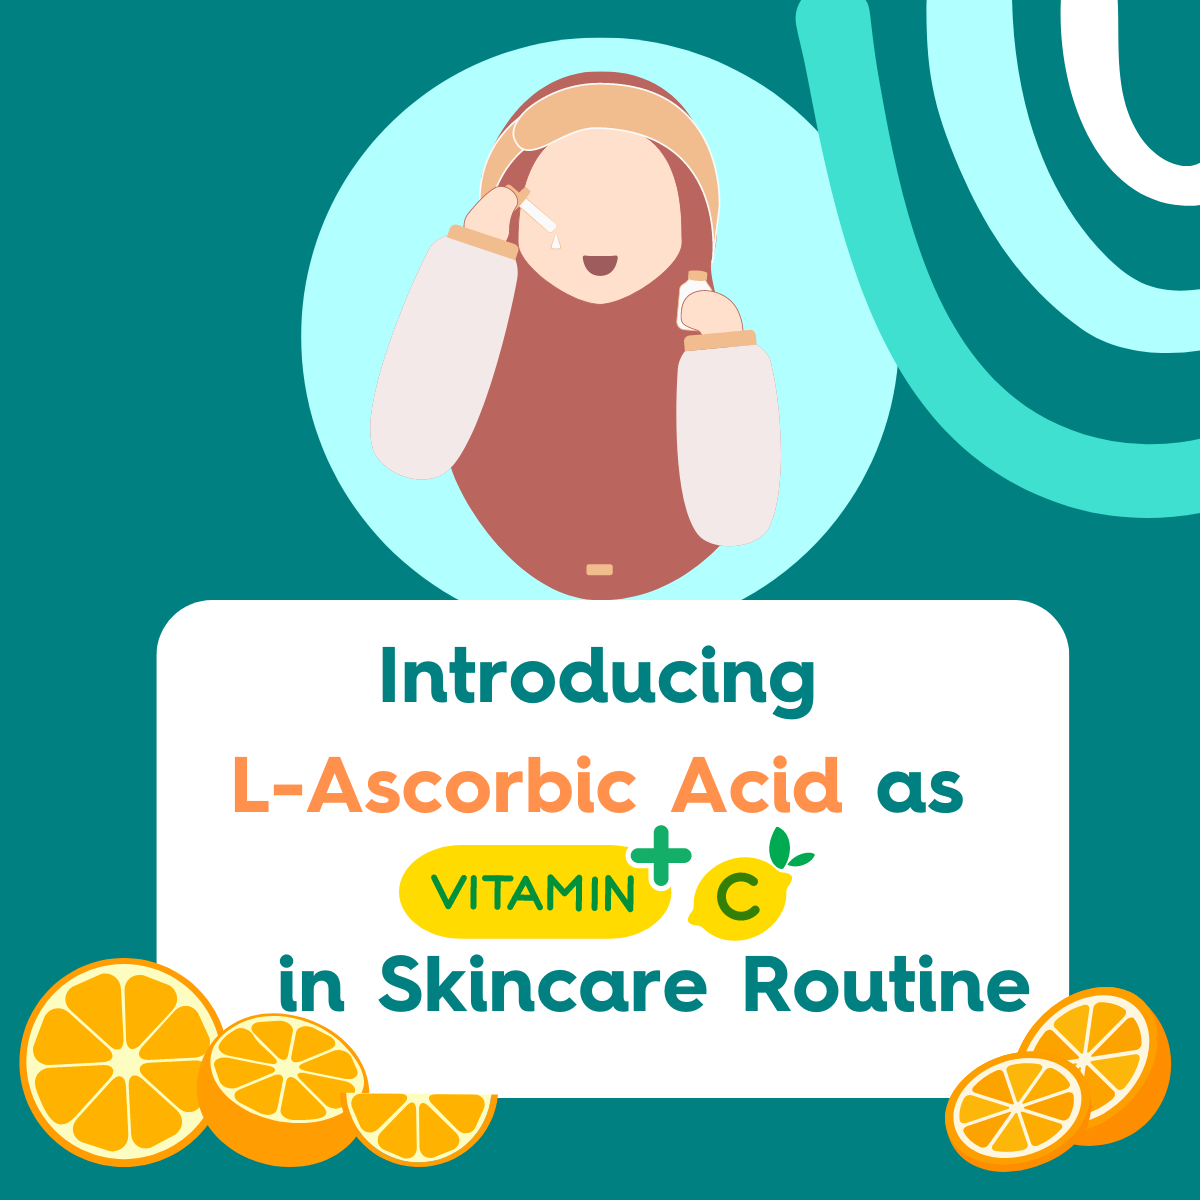 Introducing L-Ascorbic Acid as Vitamin C in Skincare Routine